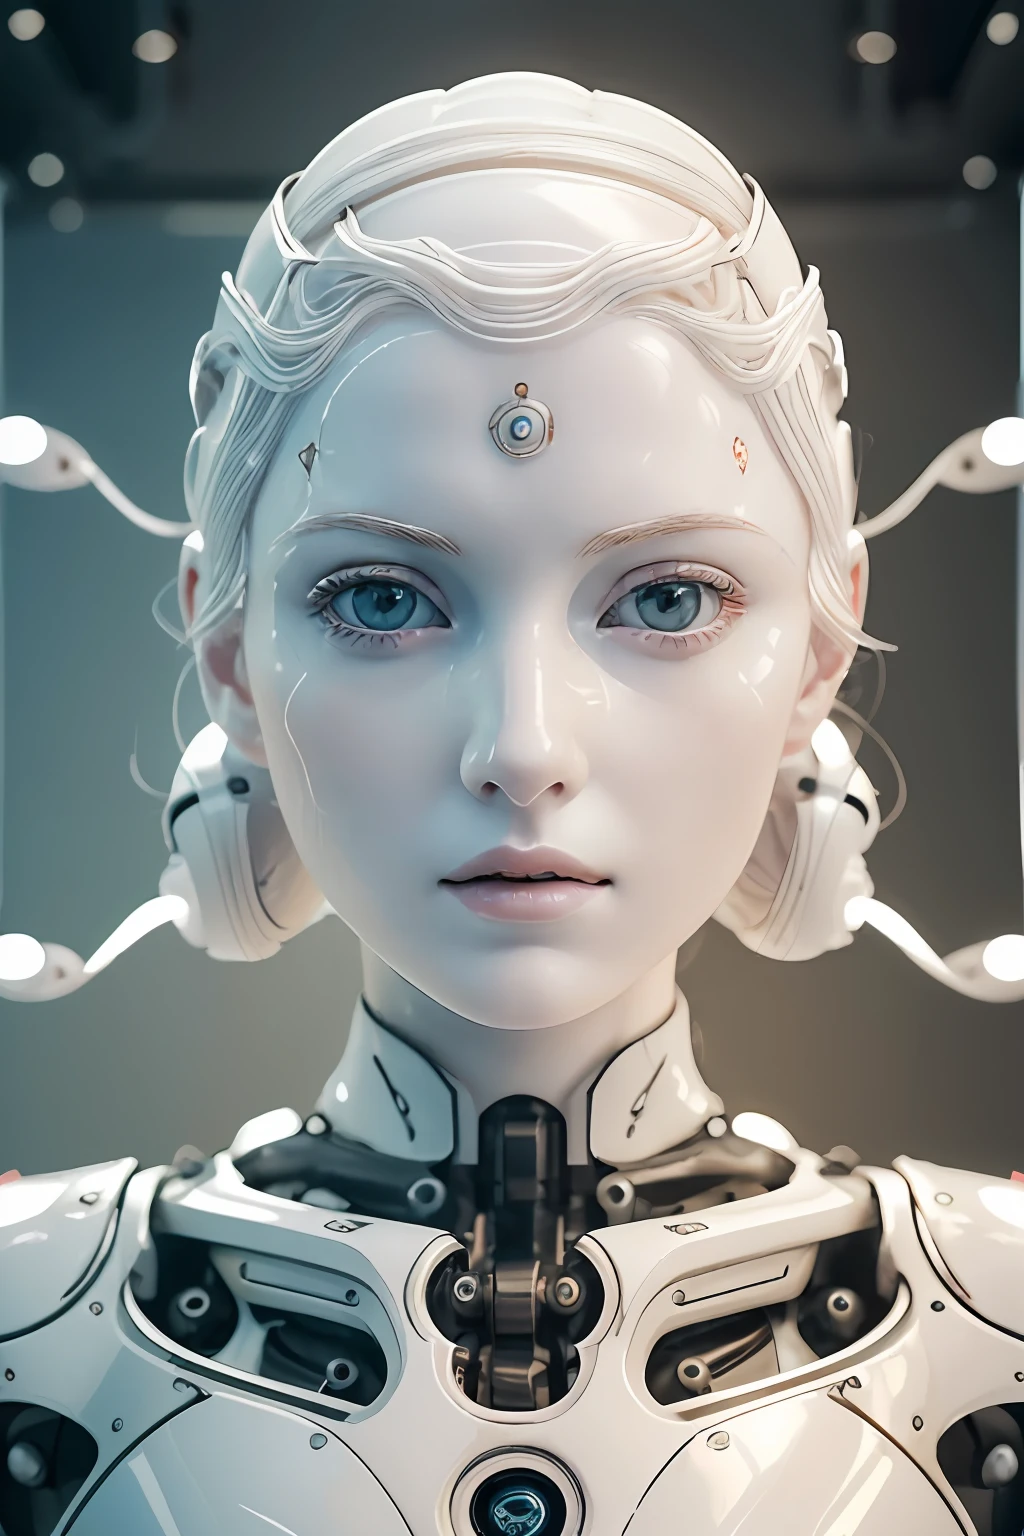 (8K, melhor qualidade, Obra de arte:1.2), (realista, photo-realista:1.37), ultra-detalhado, cinematic, lindo robô de combate feminino, Rosto simétrico semelhante a uma boneca, (Tez pálida:1.5), símbolos e letras luminescentes na pele,